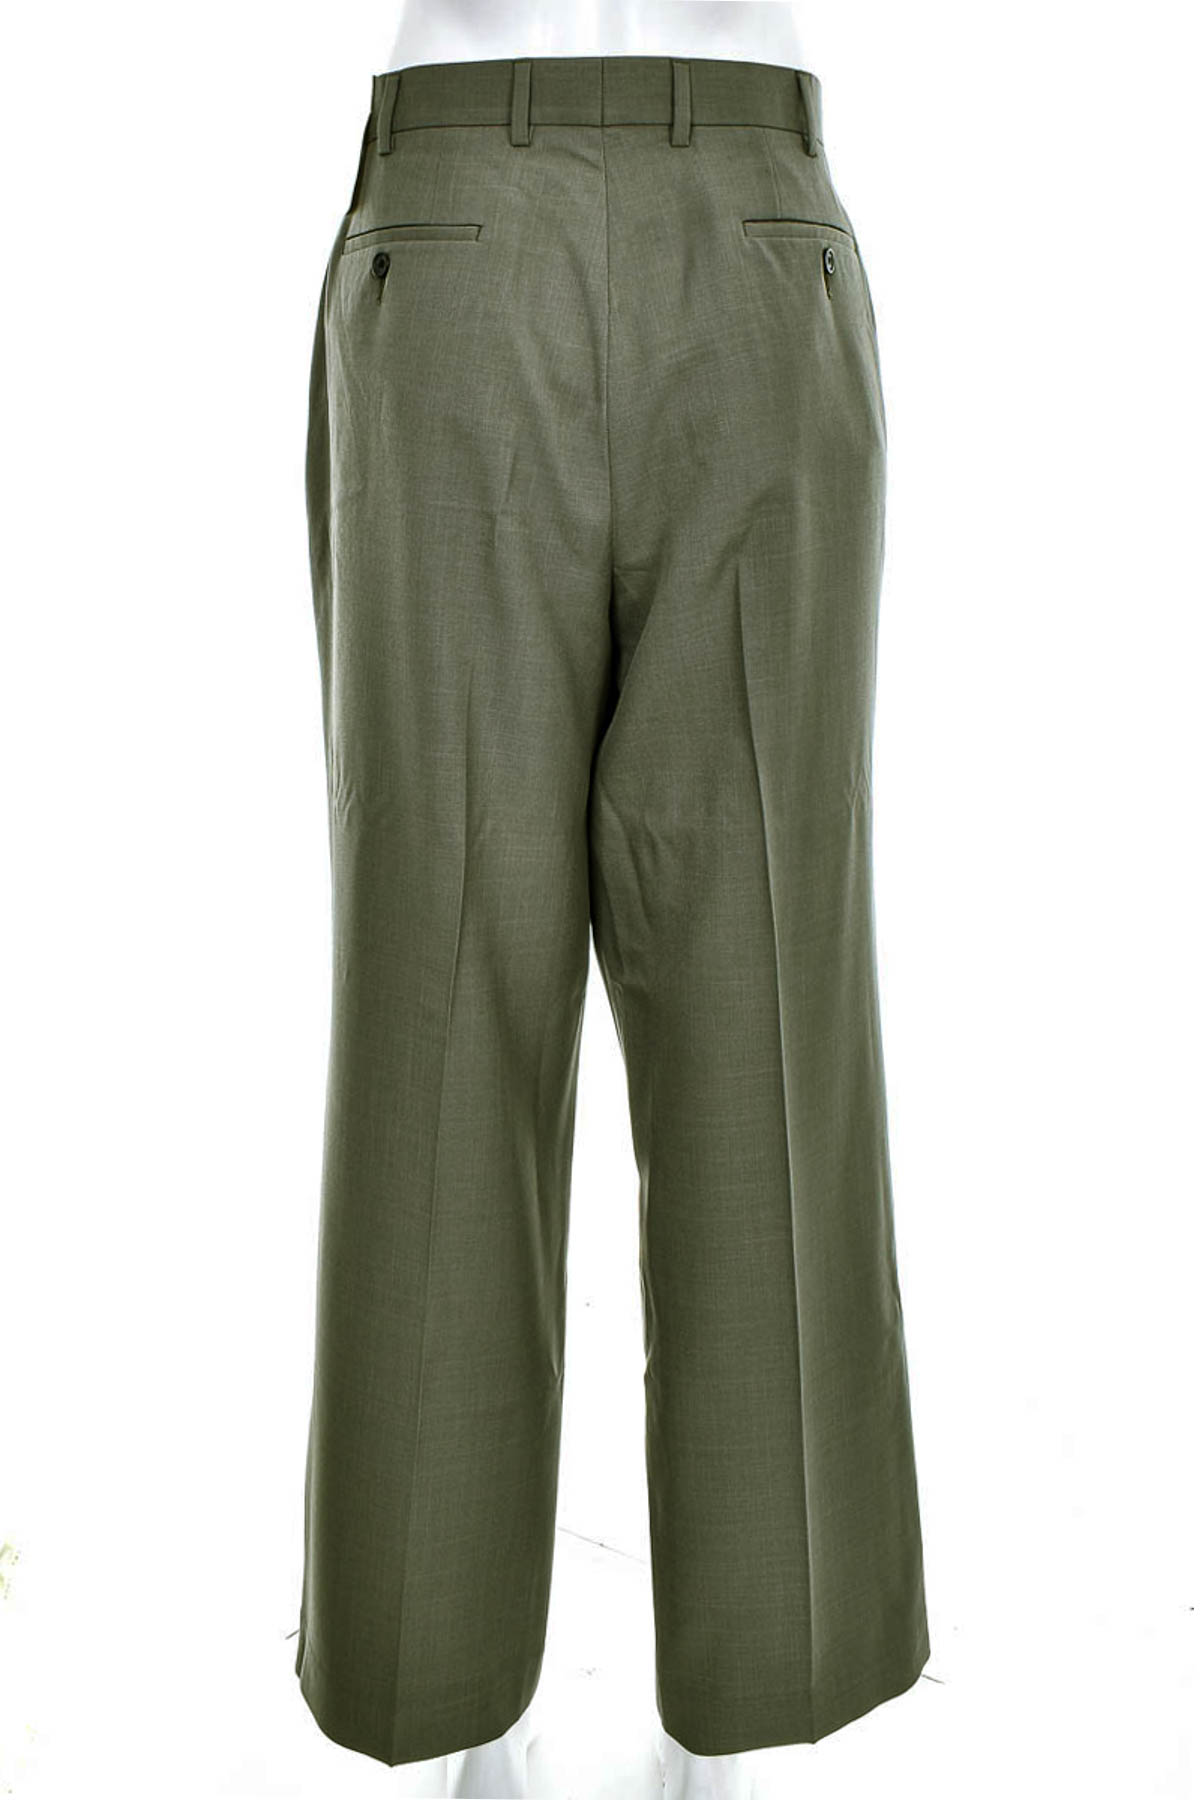 Pantalon pentru bărbați - Perry Ellis - 1